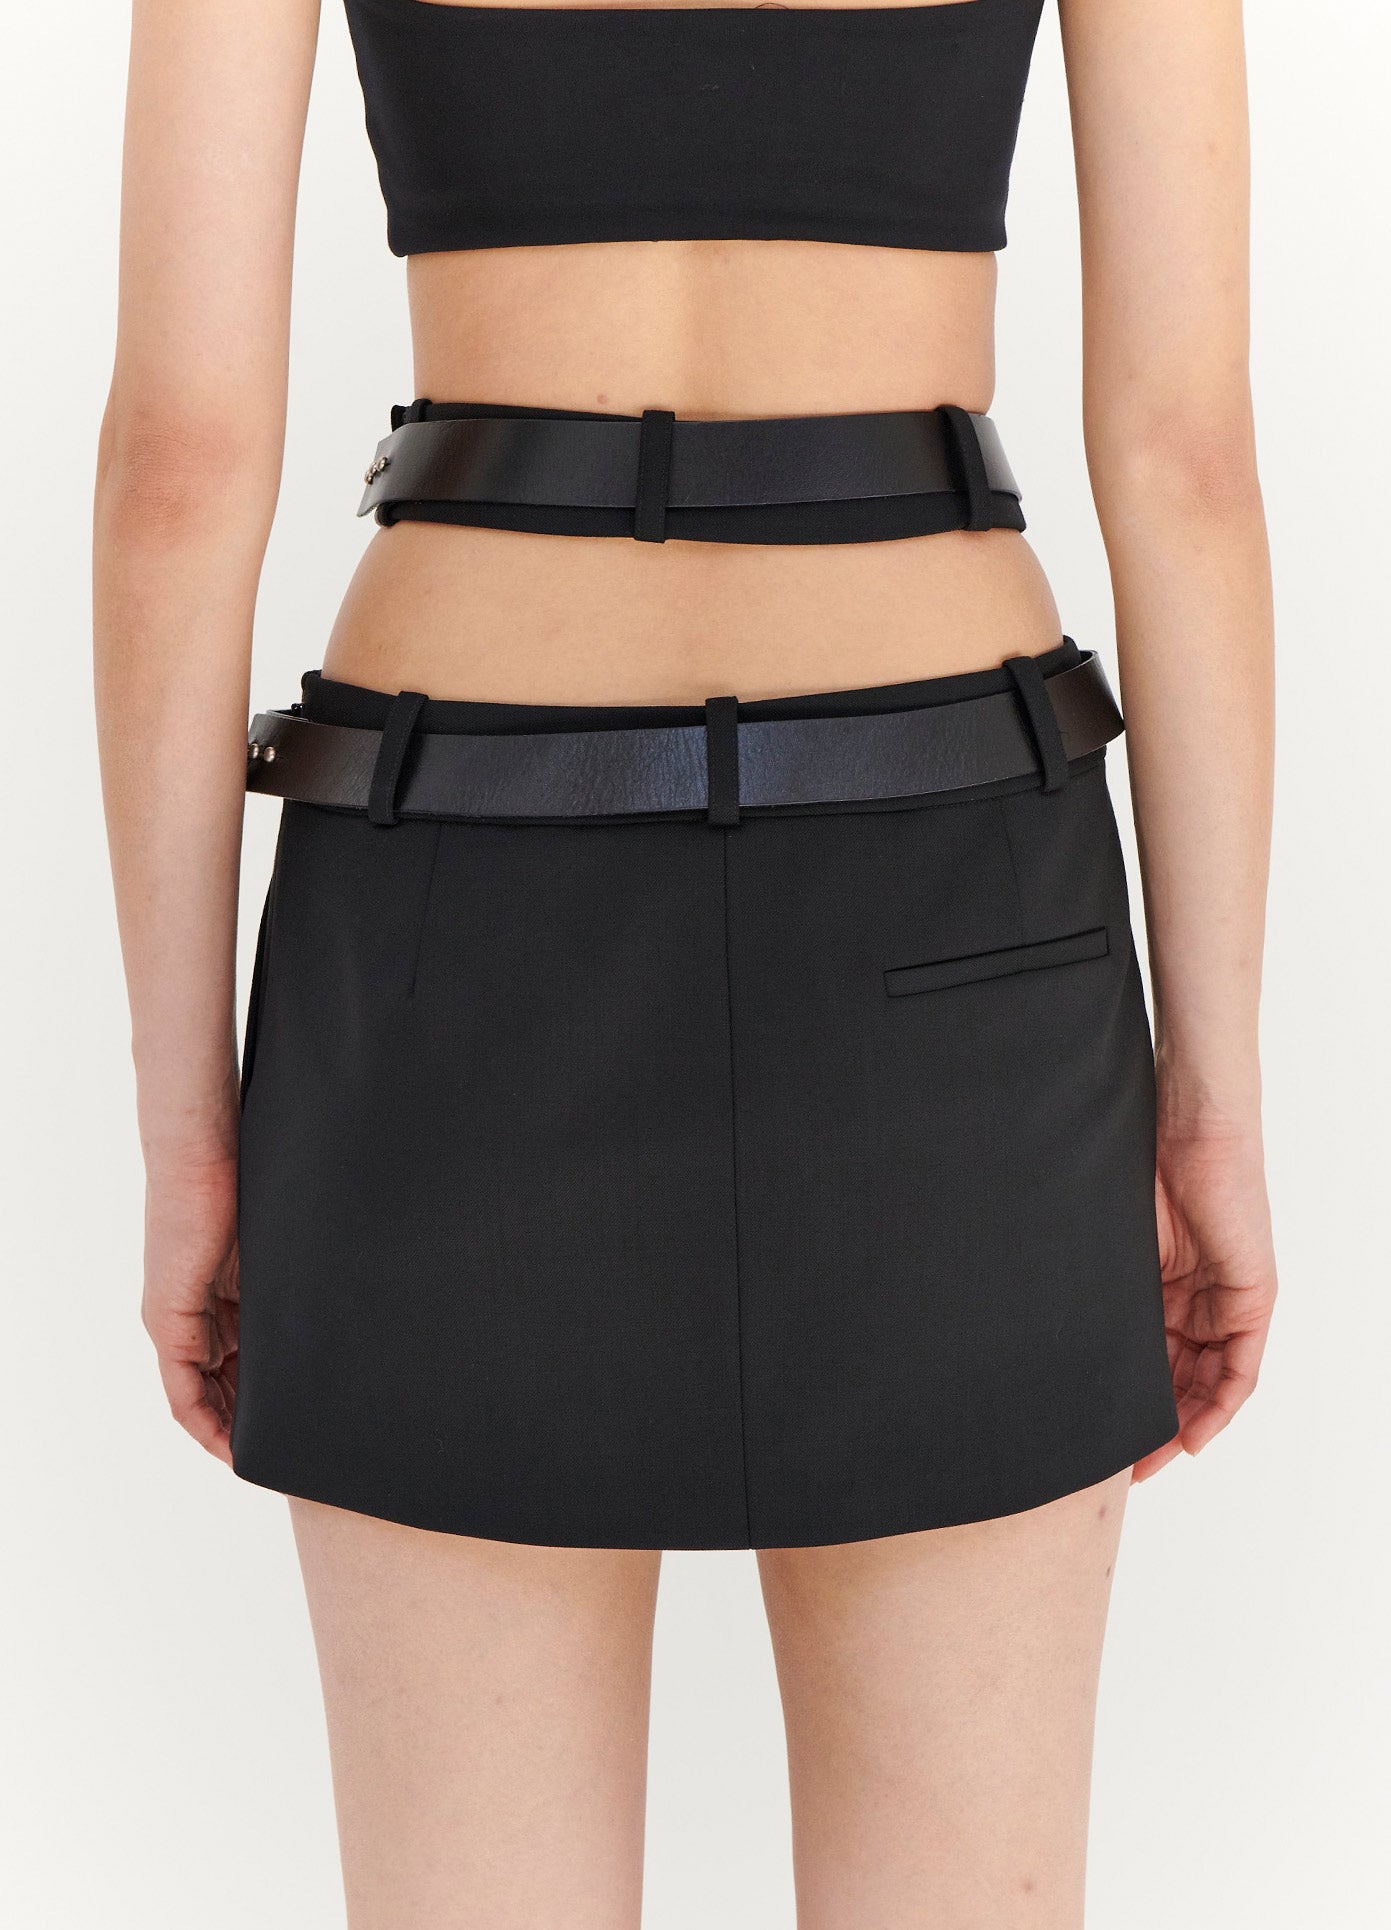 MONSE Criss Cross Waist Belted Mini Skirt in Black on Model Back View